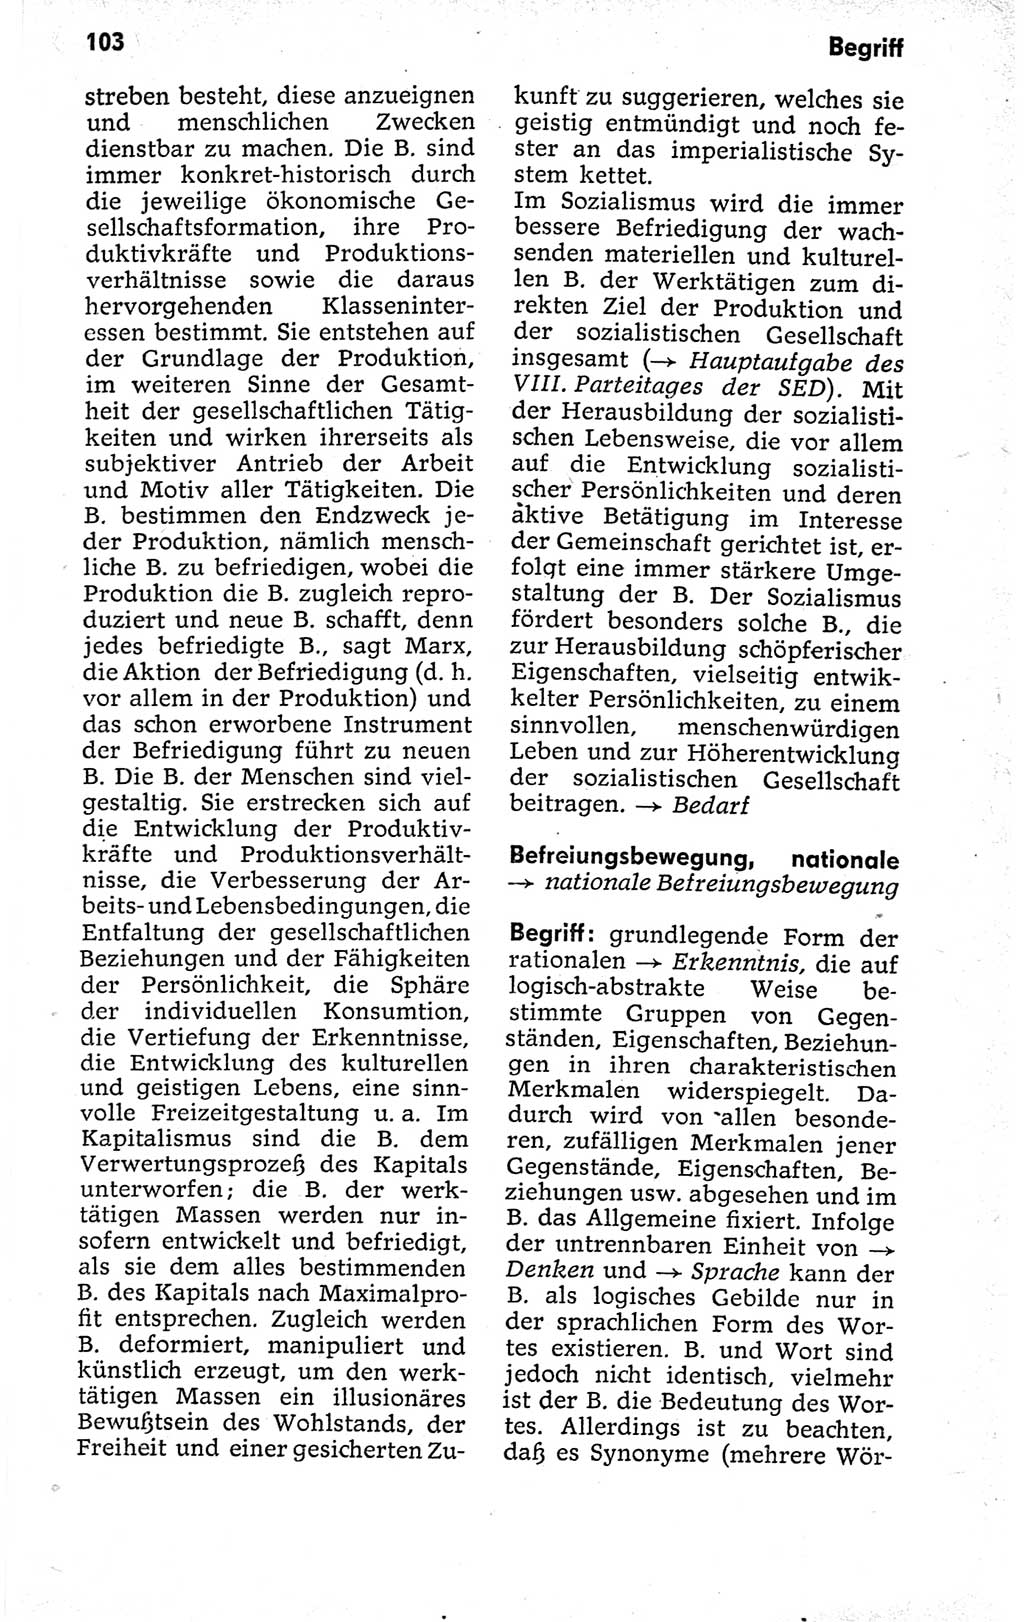 Kleines politisches Wörterbuch [Deutsche Demokratische Republik (DDR)] 1973, Seite 103 (Kl. pol. Wb. DDR 1973, S. 103)